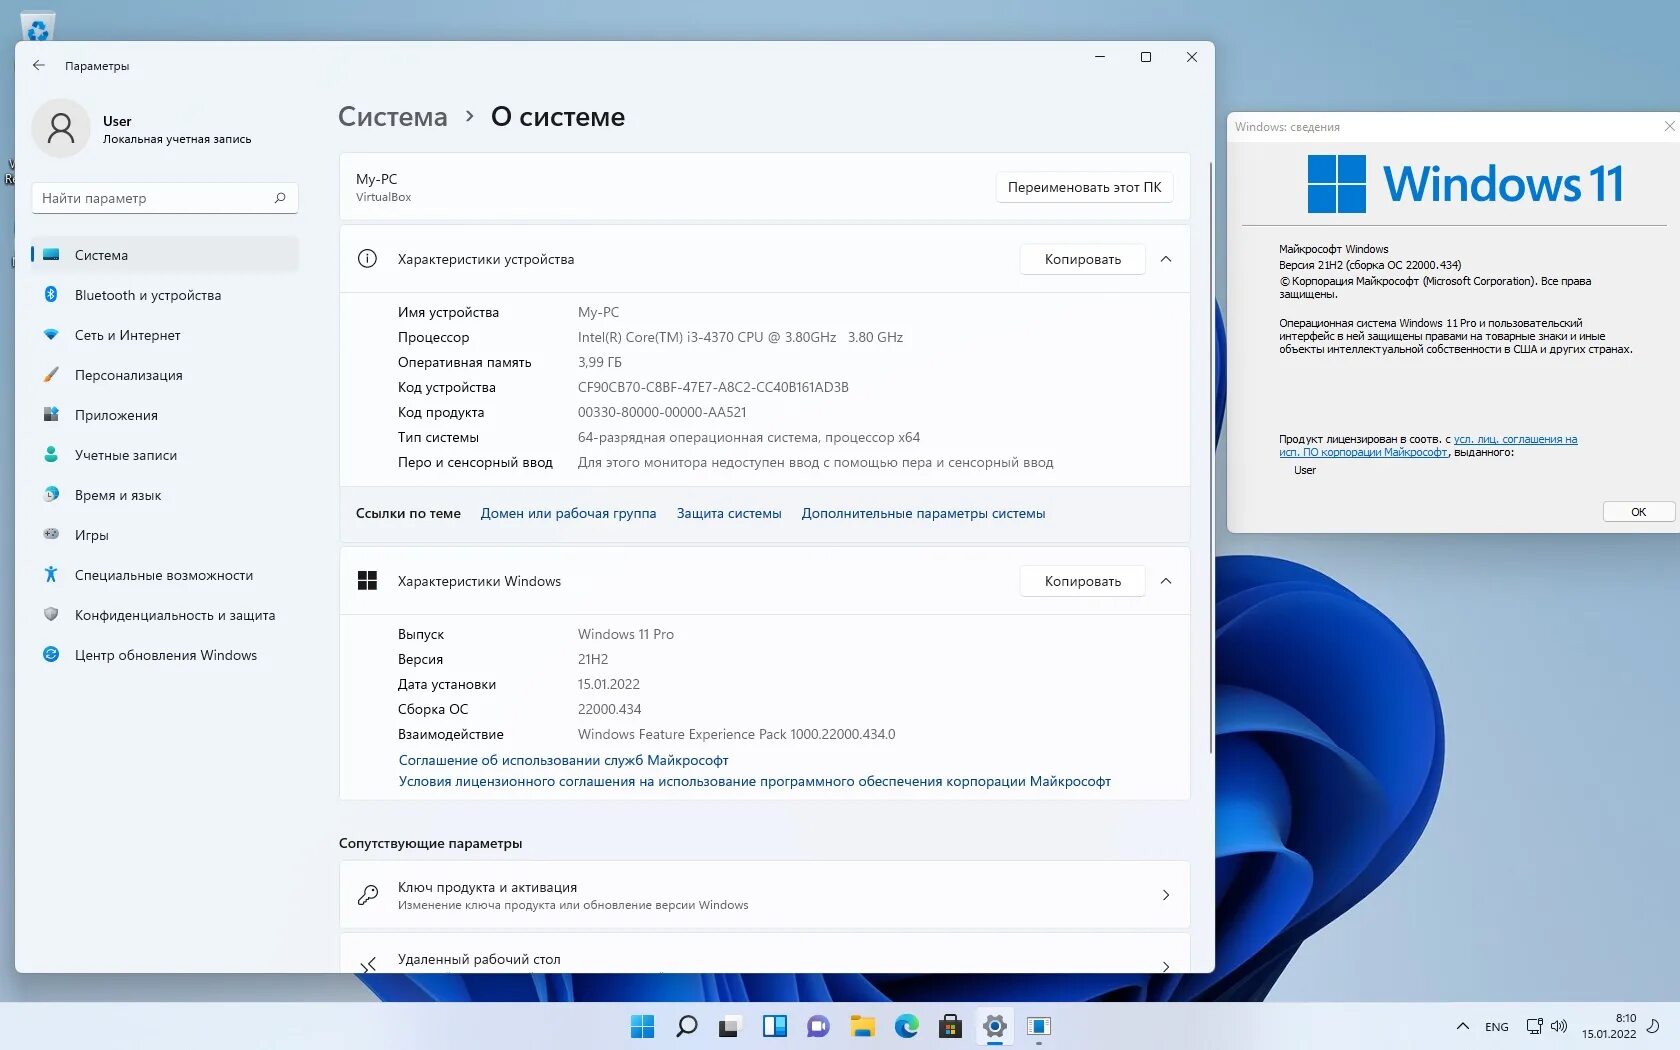 Windows 11 crack. Обновление виндовс 11. Программное обеспечение виндовс 11. Виндовс 11 характеристики. Виндовс 10 версия 21н2.